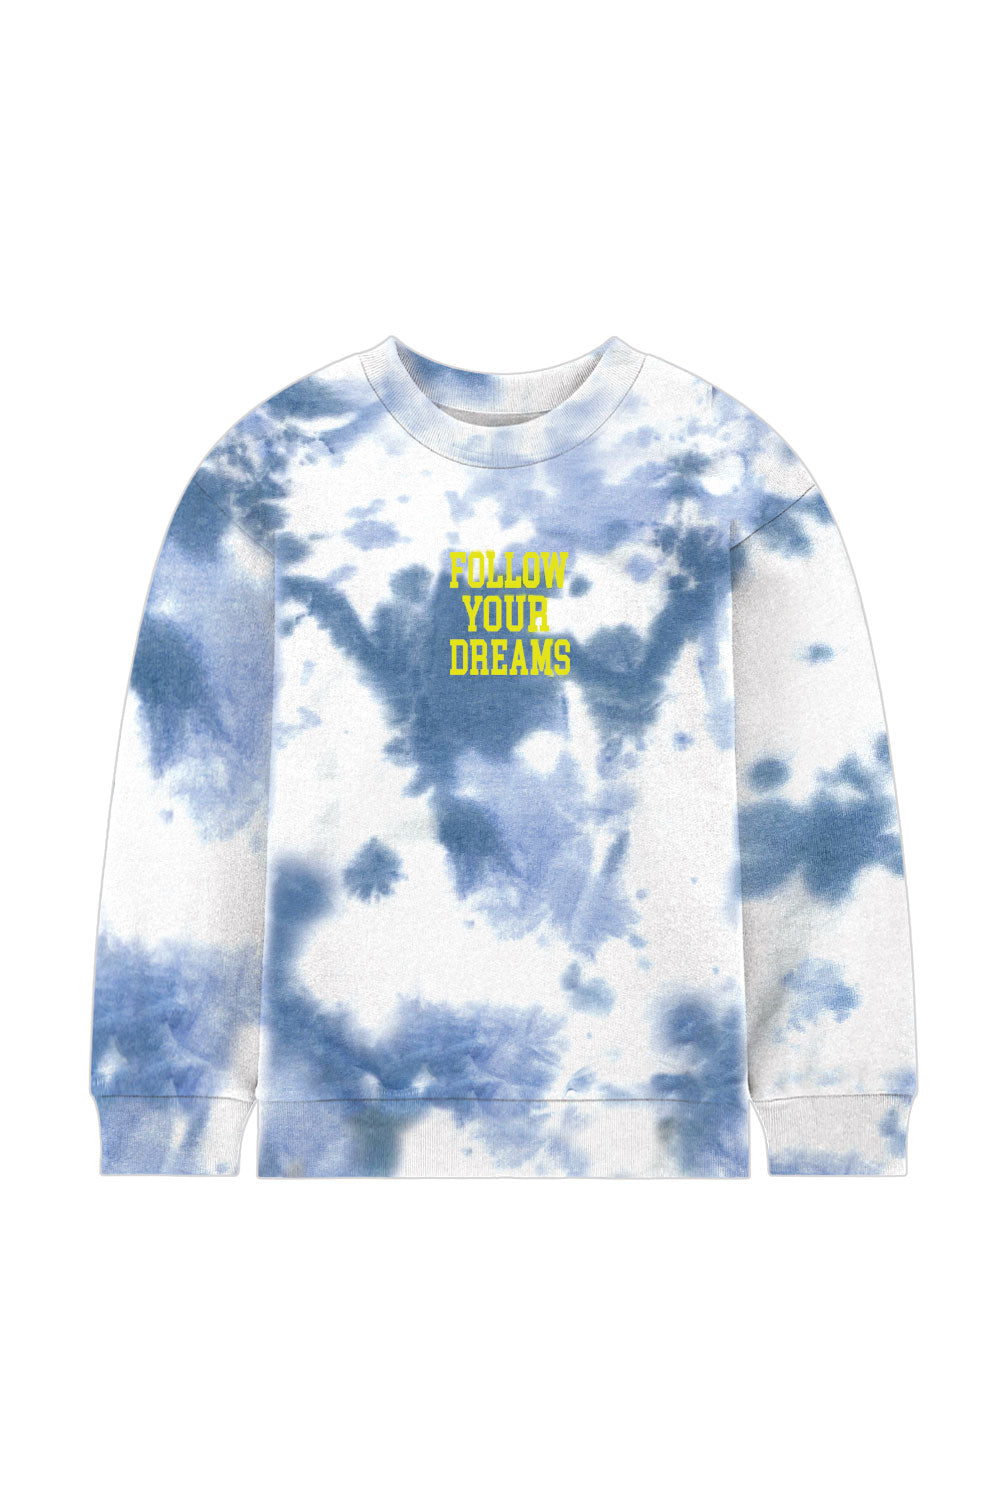 Blue Dreams Tie-Dye Crew Neck Sweatshirt